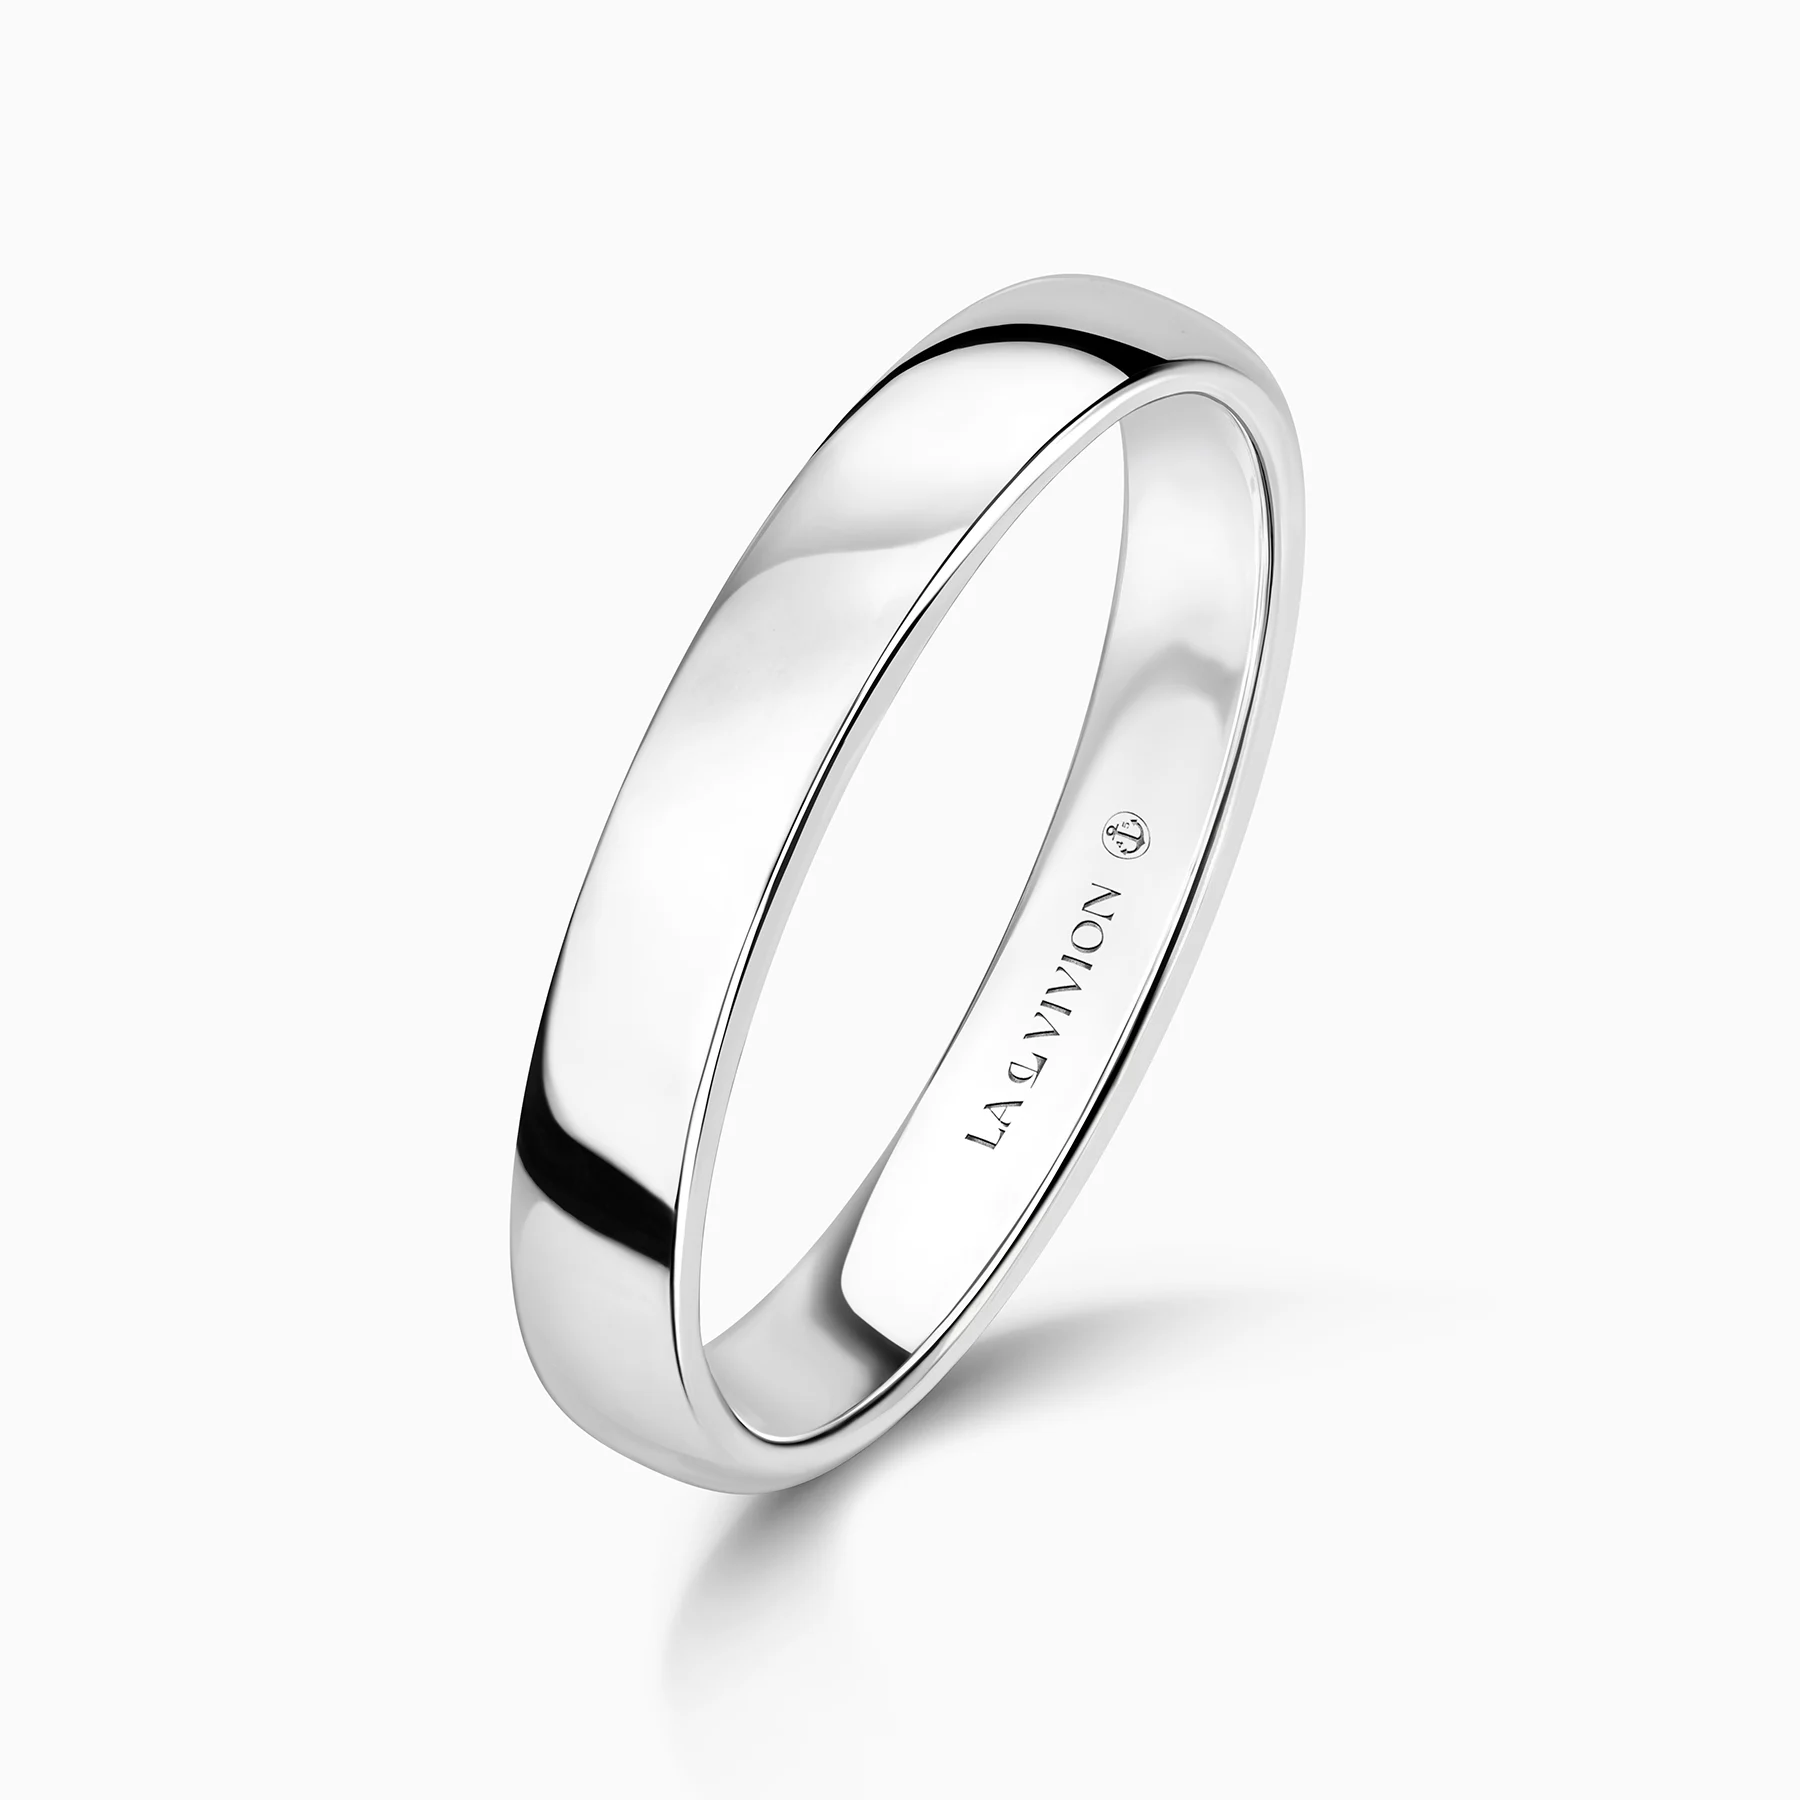 Обручальное кольцо Le Avenir 3.5 мм